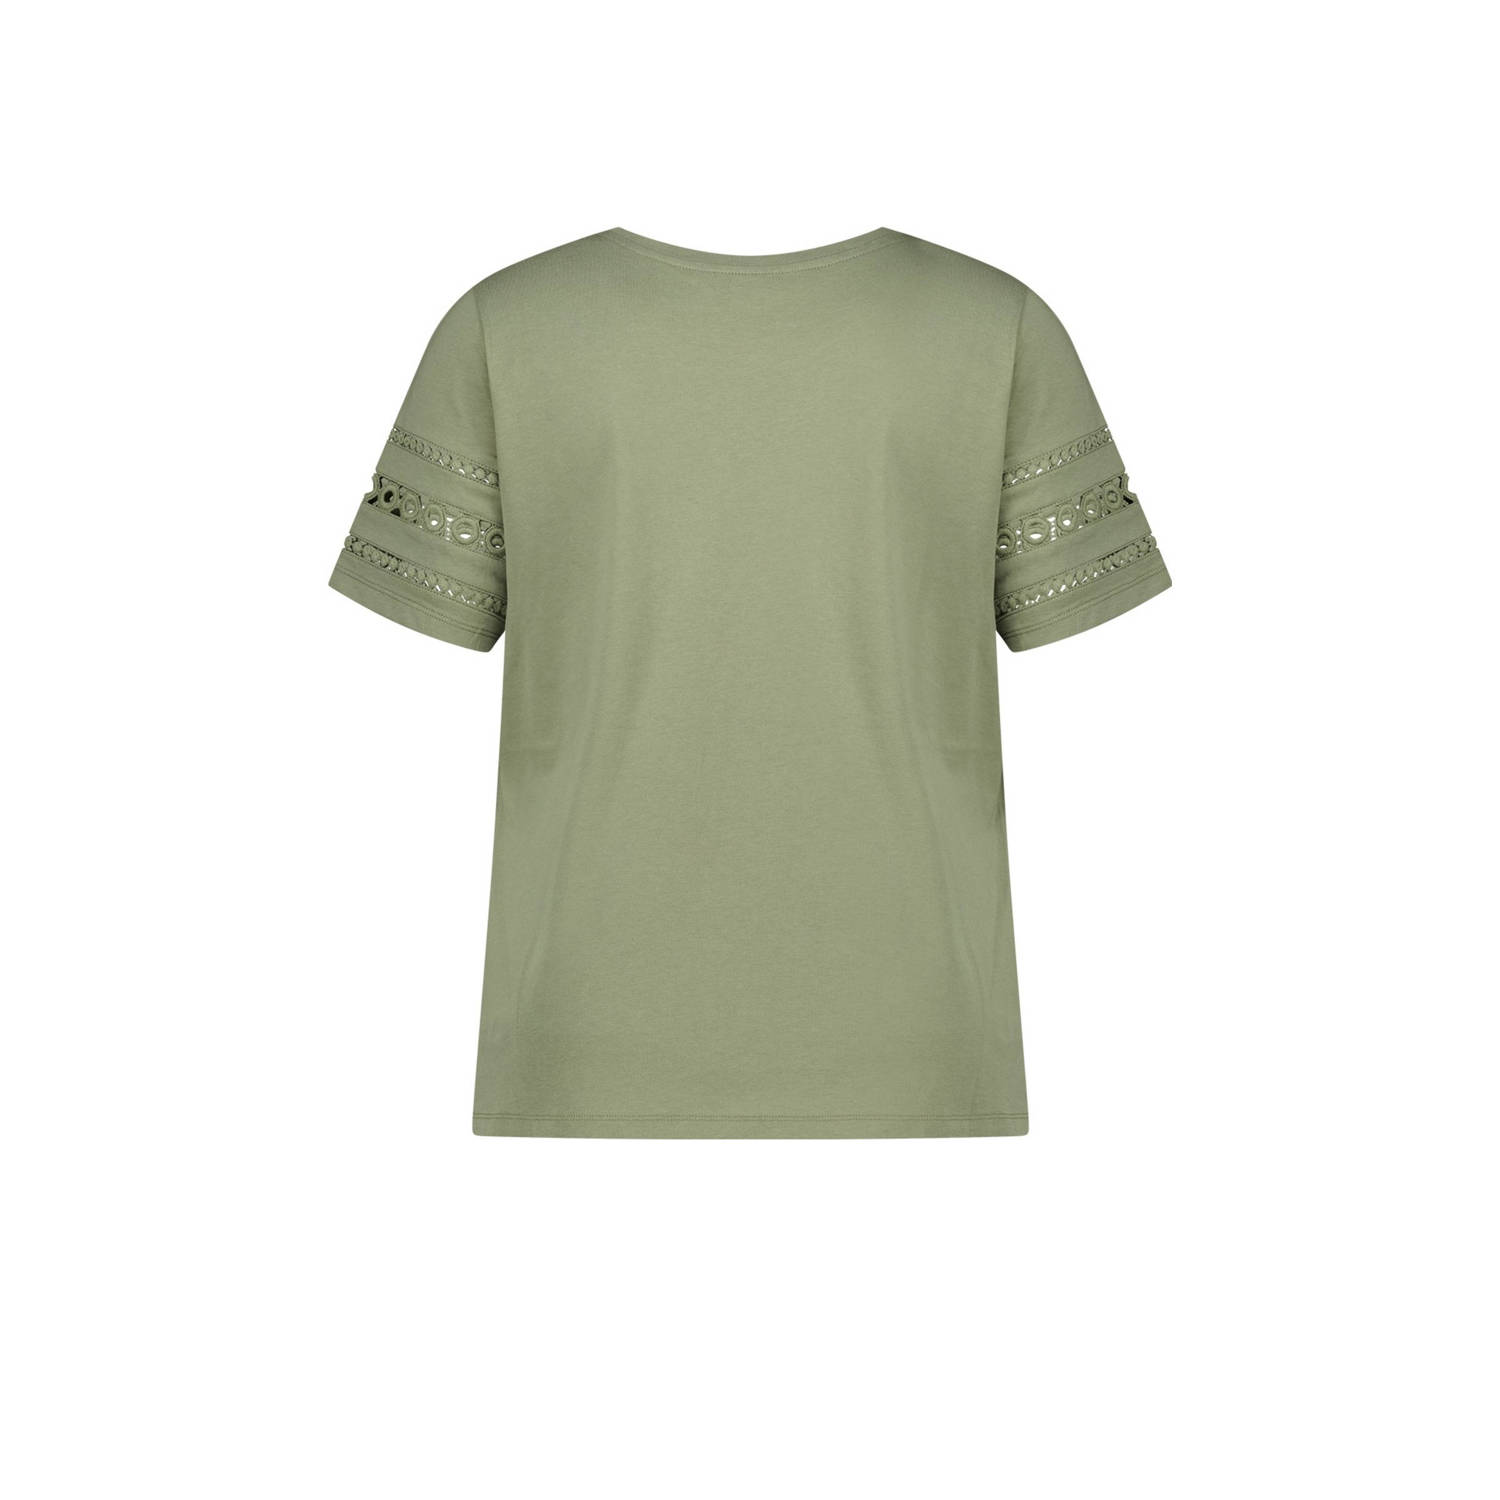 MS Mode T-shirt groen